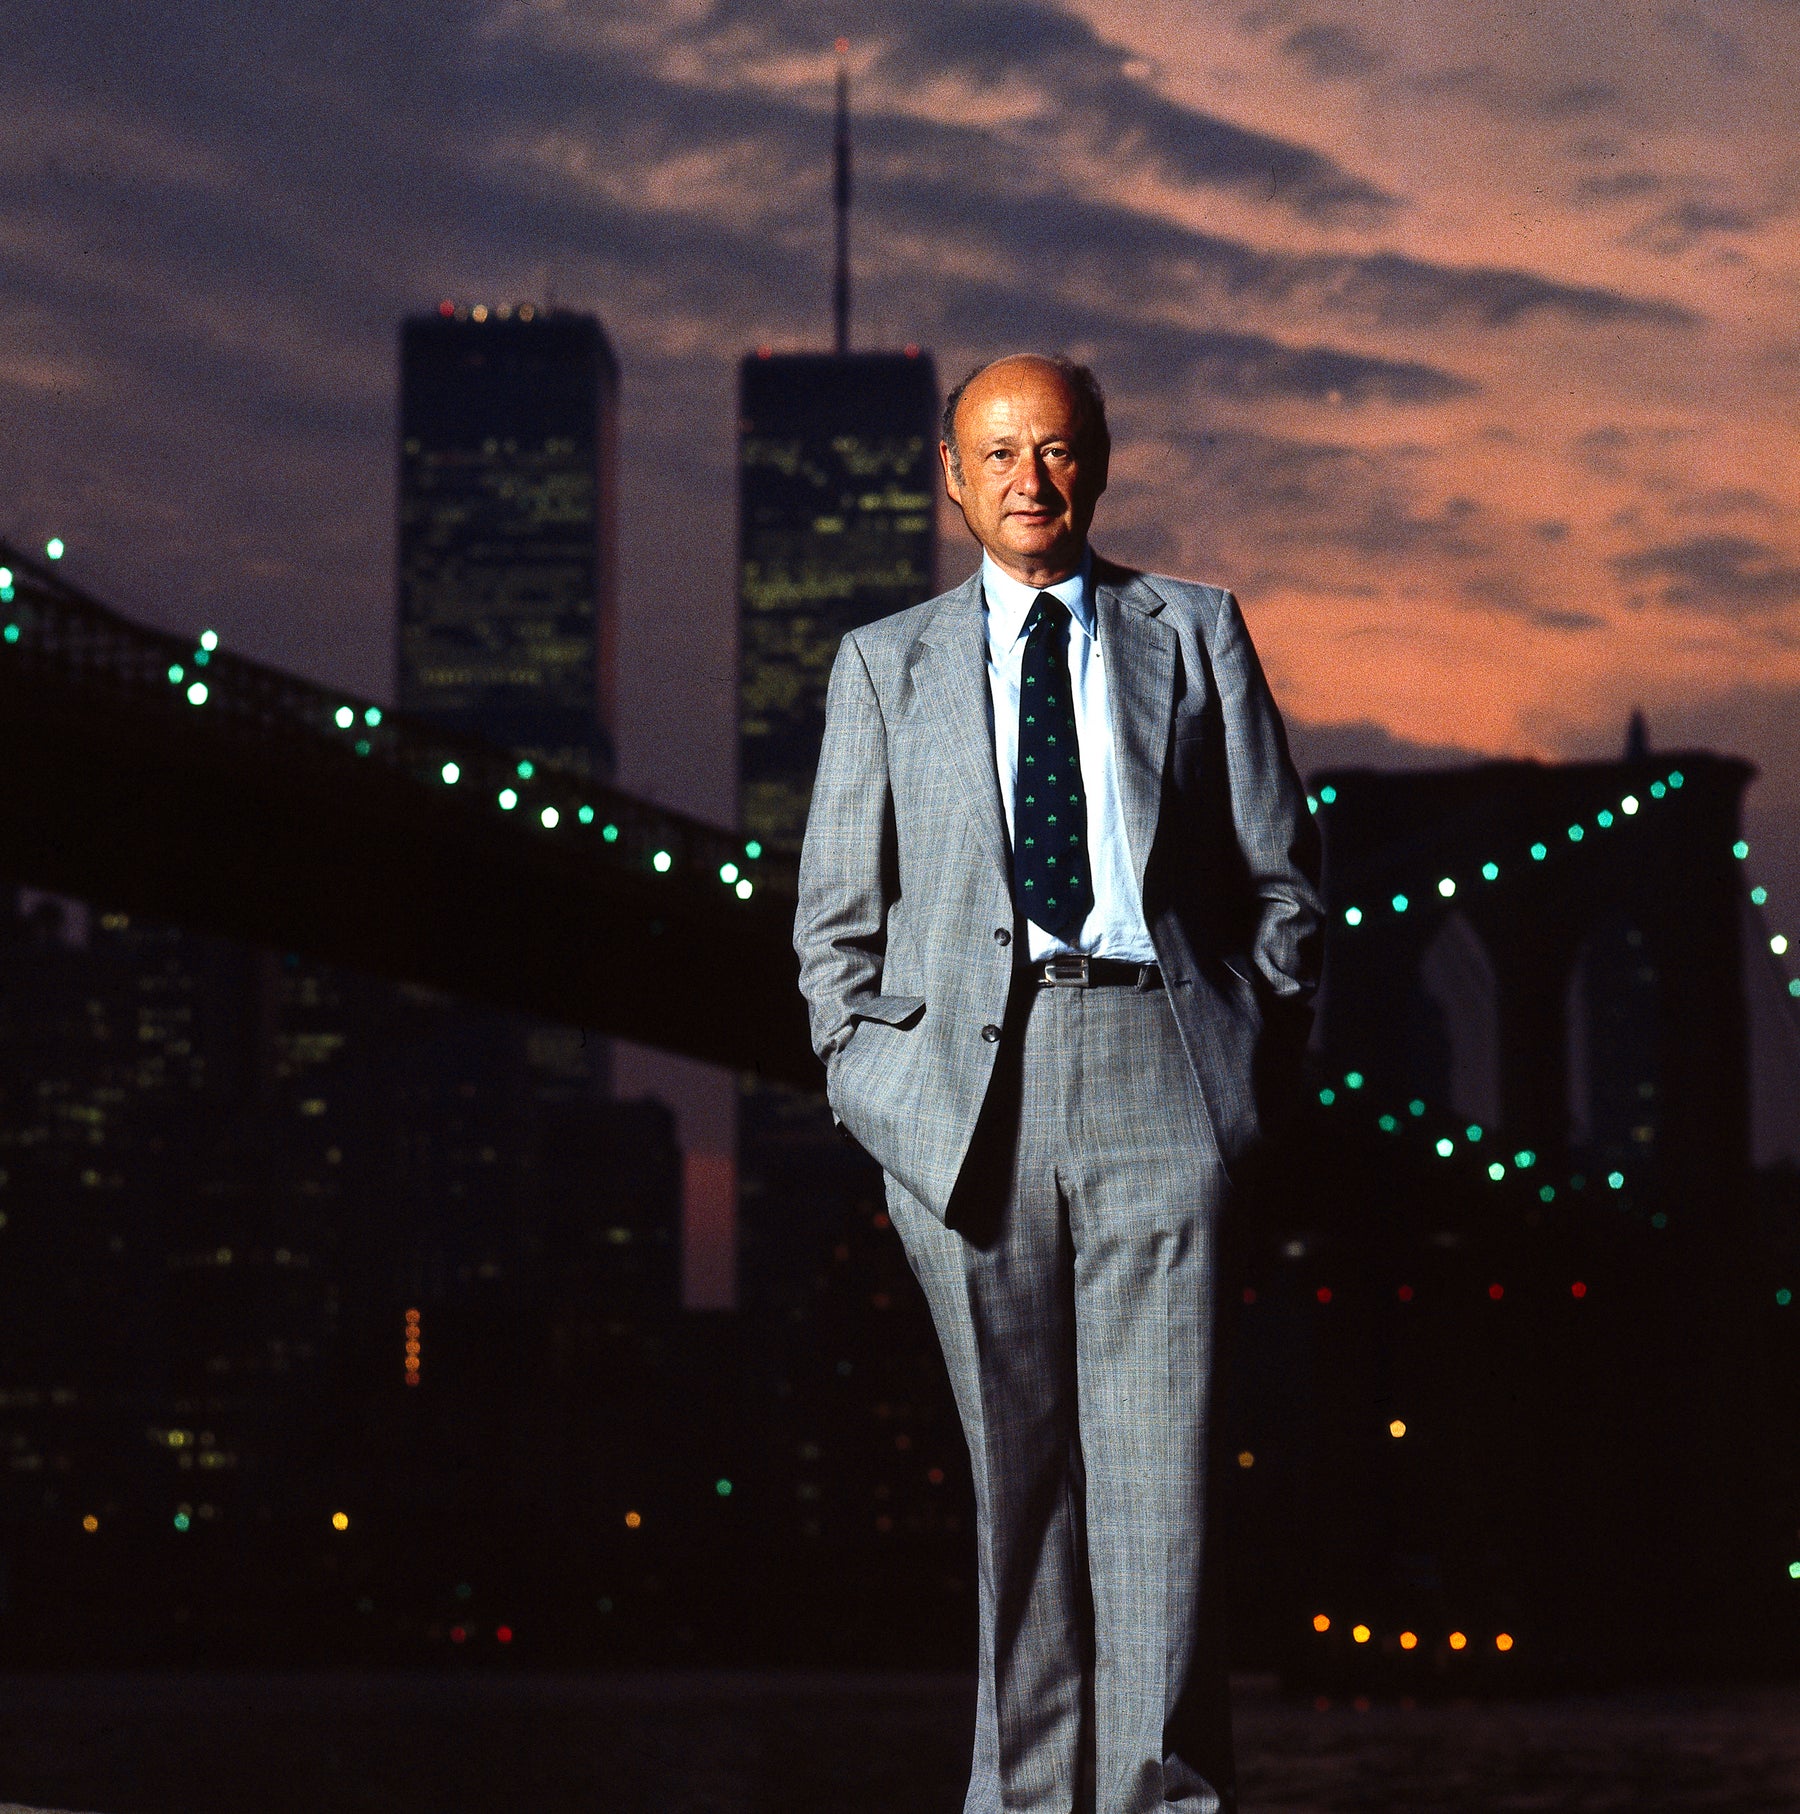 Ed Koch at Brooklyn Bridge